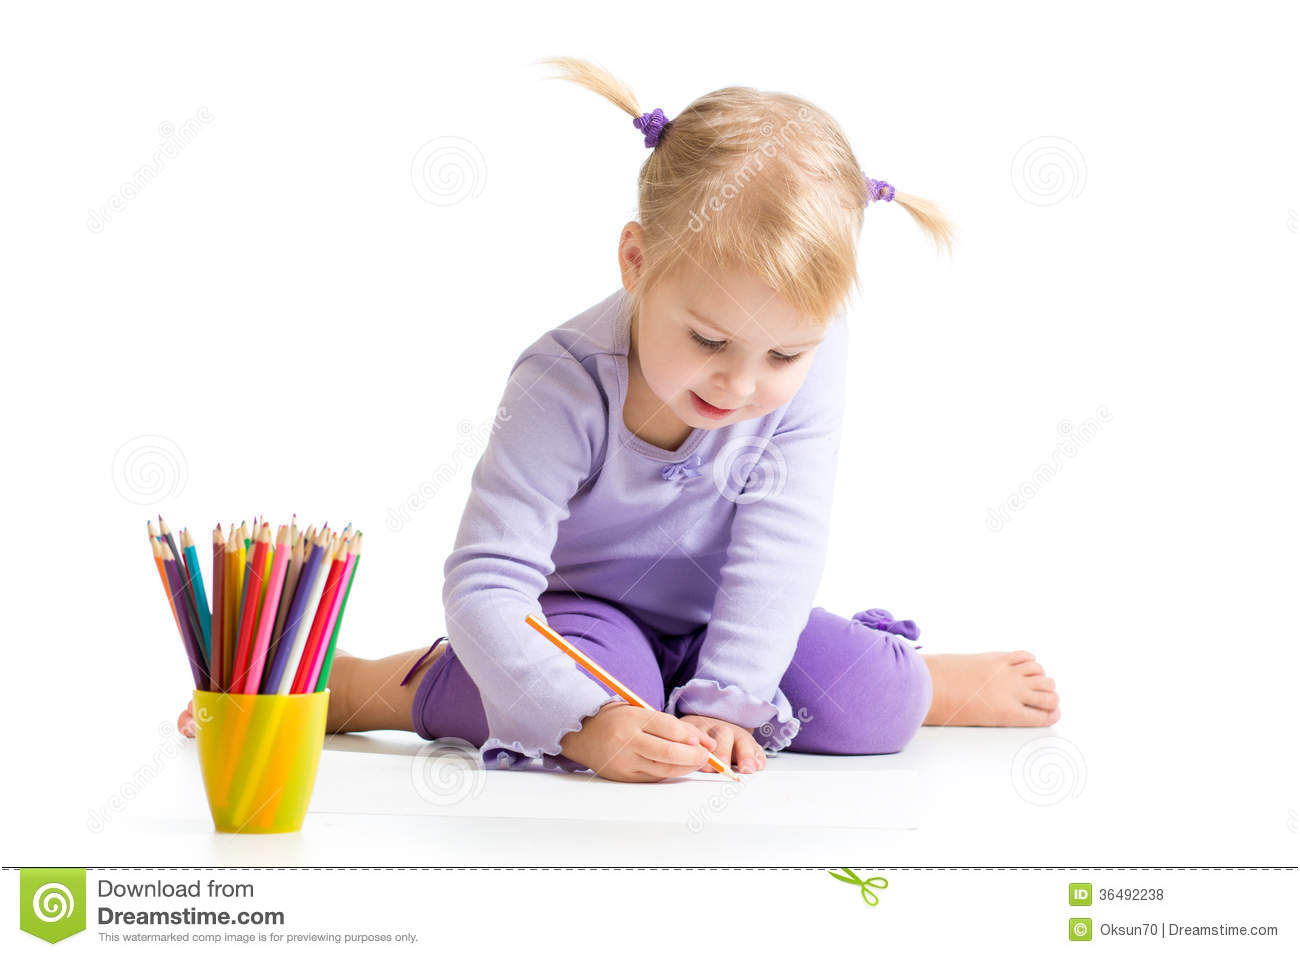 photos libres de droits dessin d enfant avec des crayons de couleur image